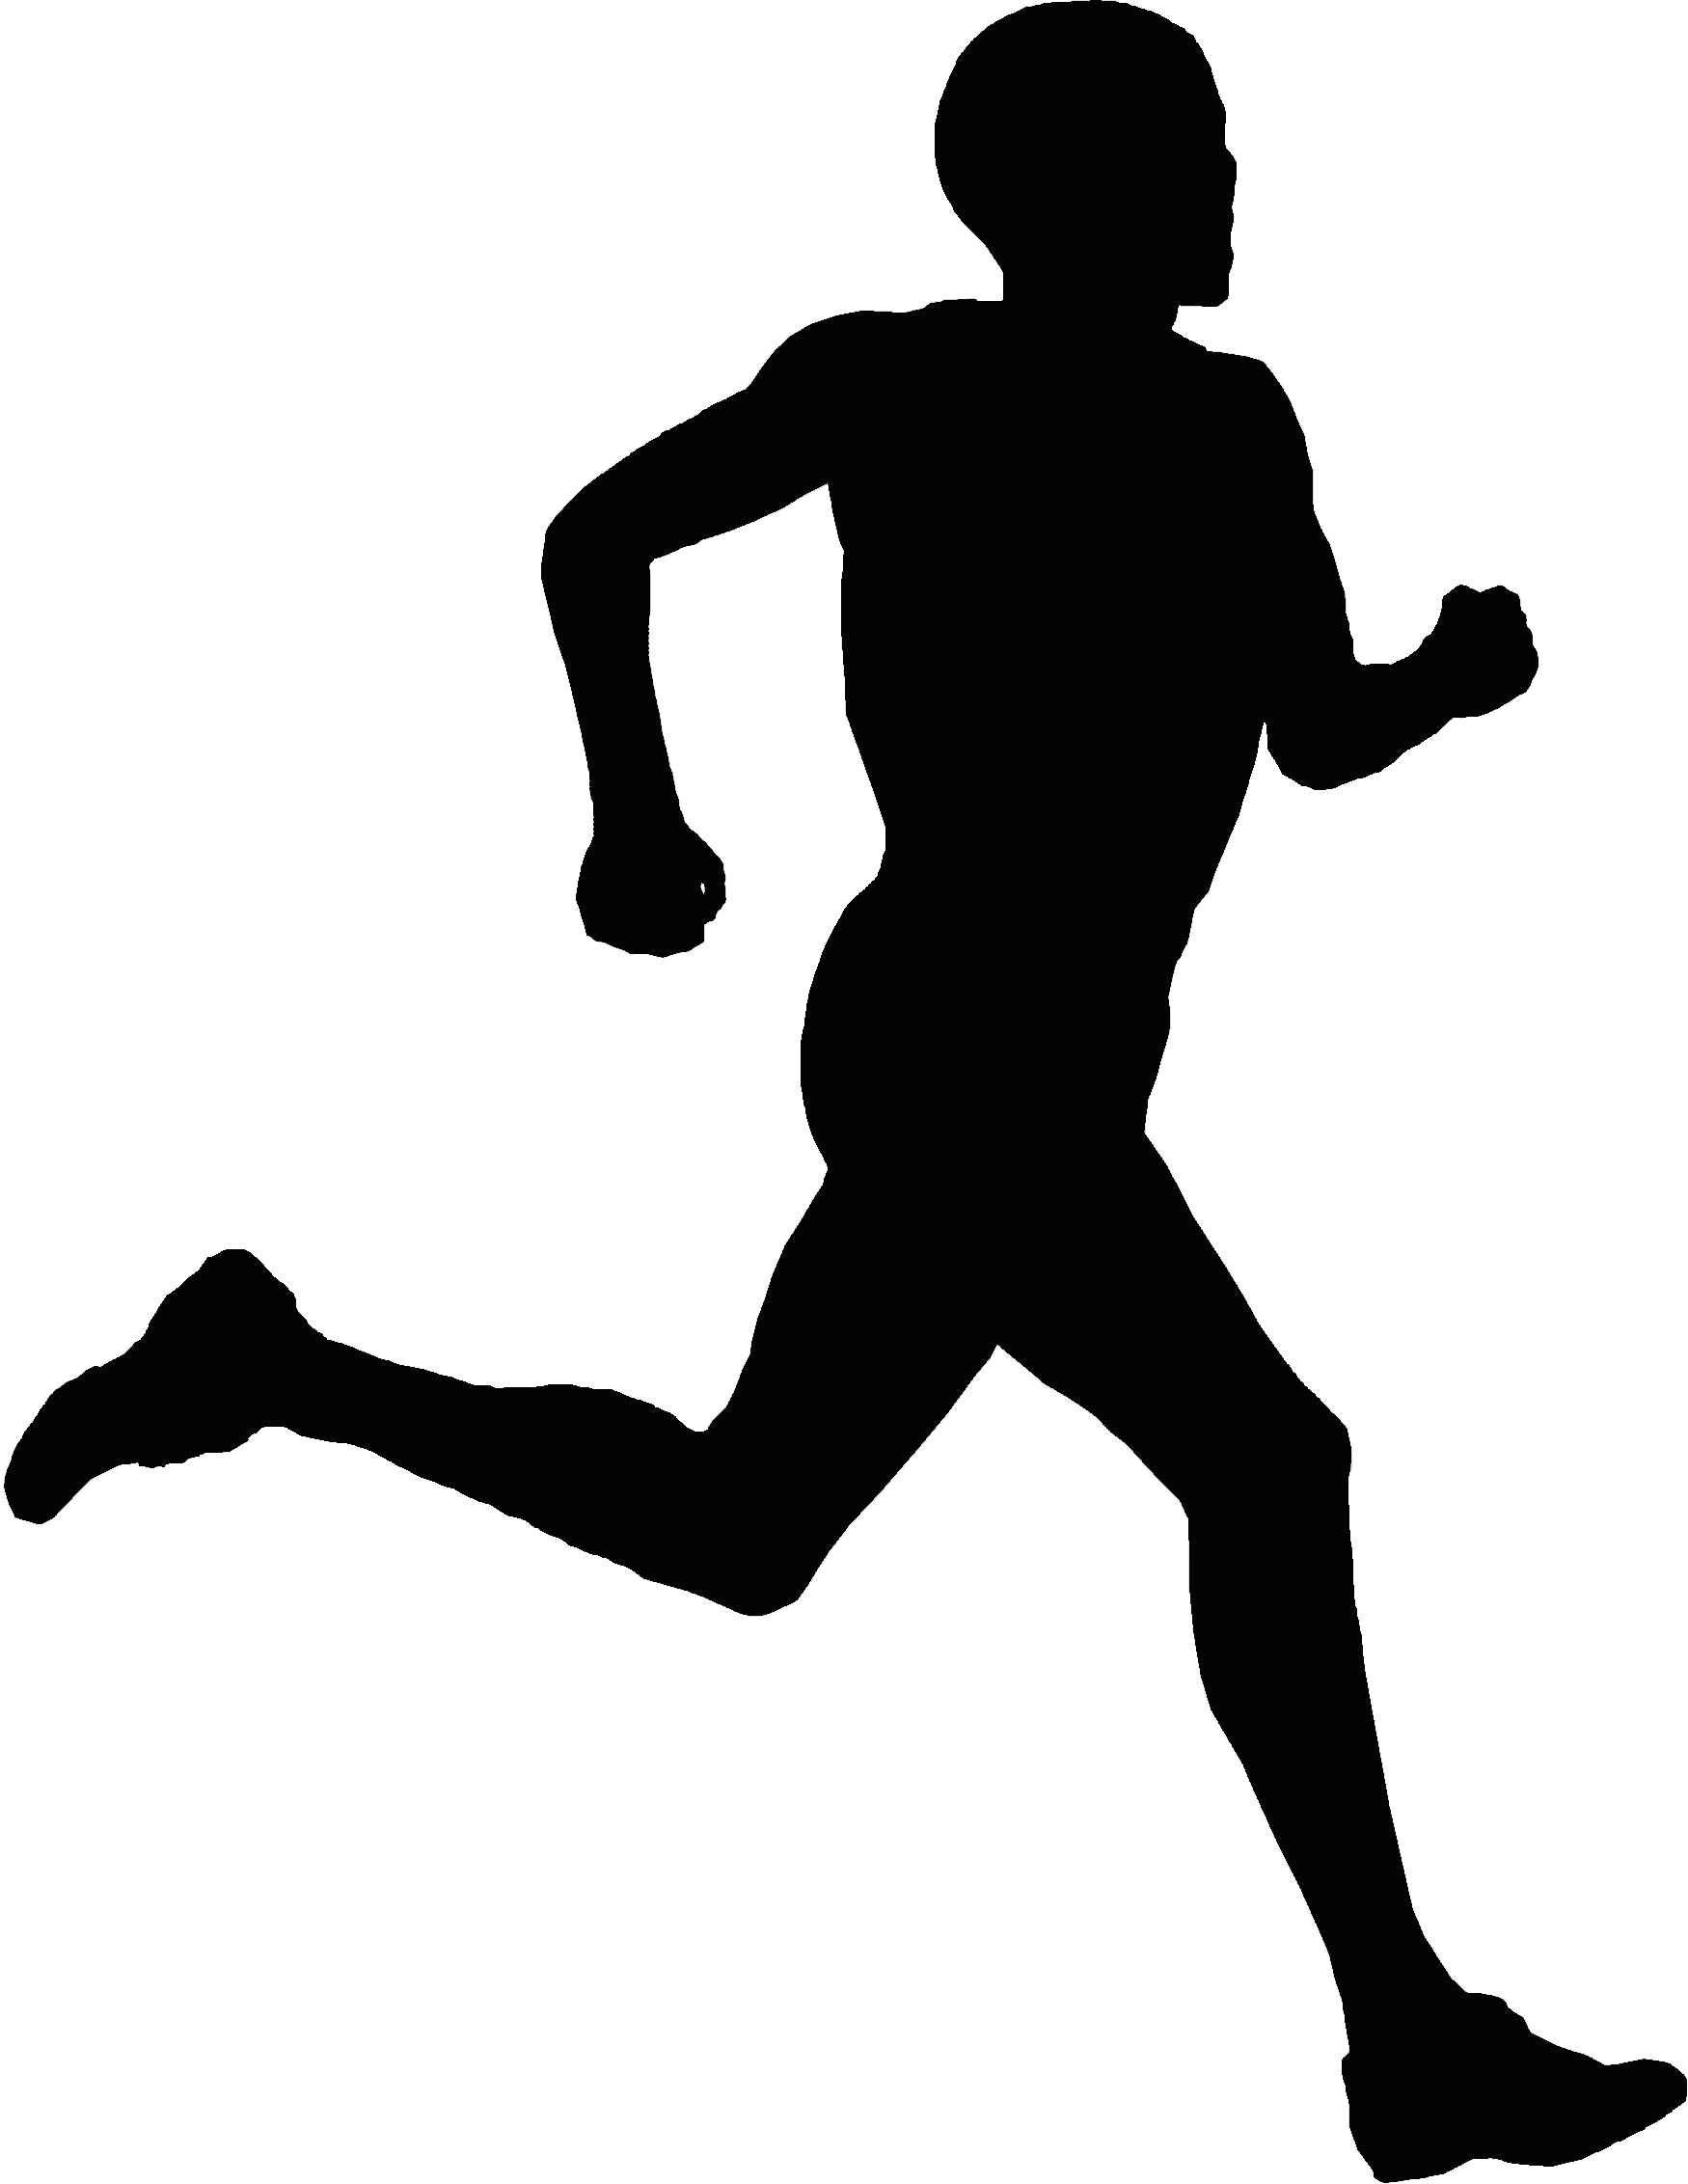 Black Man Running Logo - Running logo png 3 PNG Image